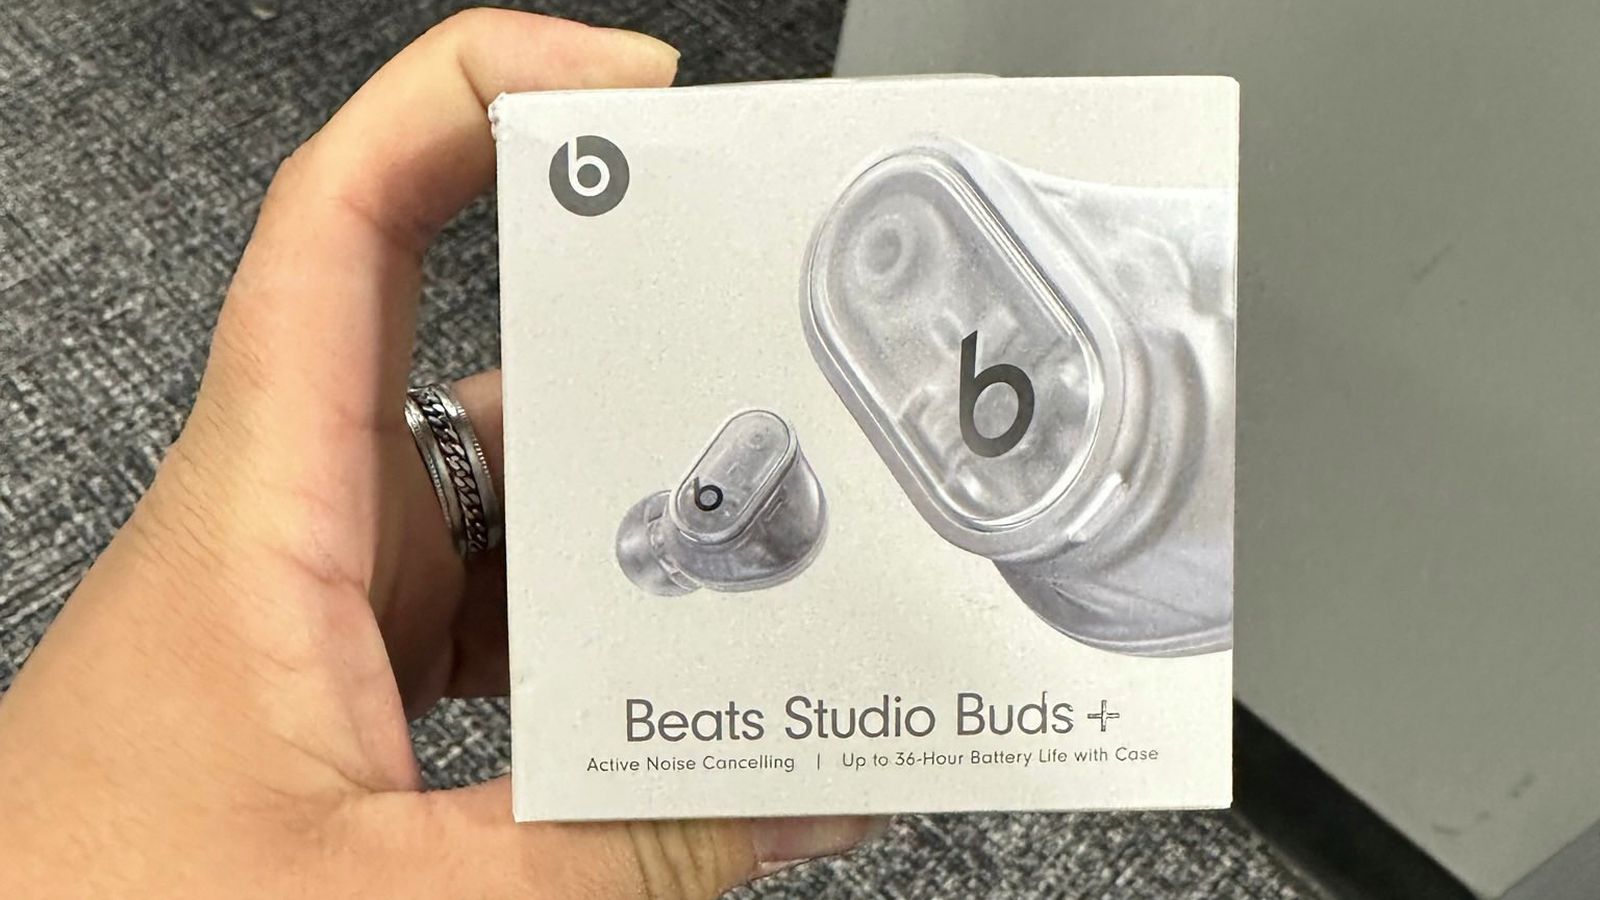 Nuovo avvistamento per le Beats Studio Buds+, in foto la versione trasparente